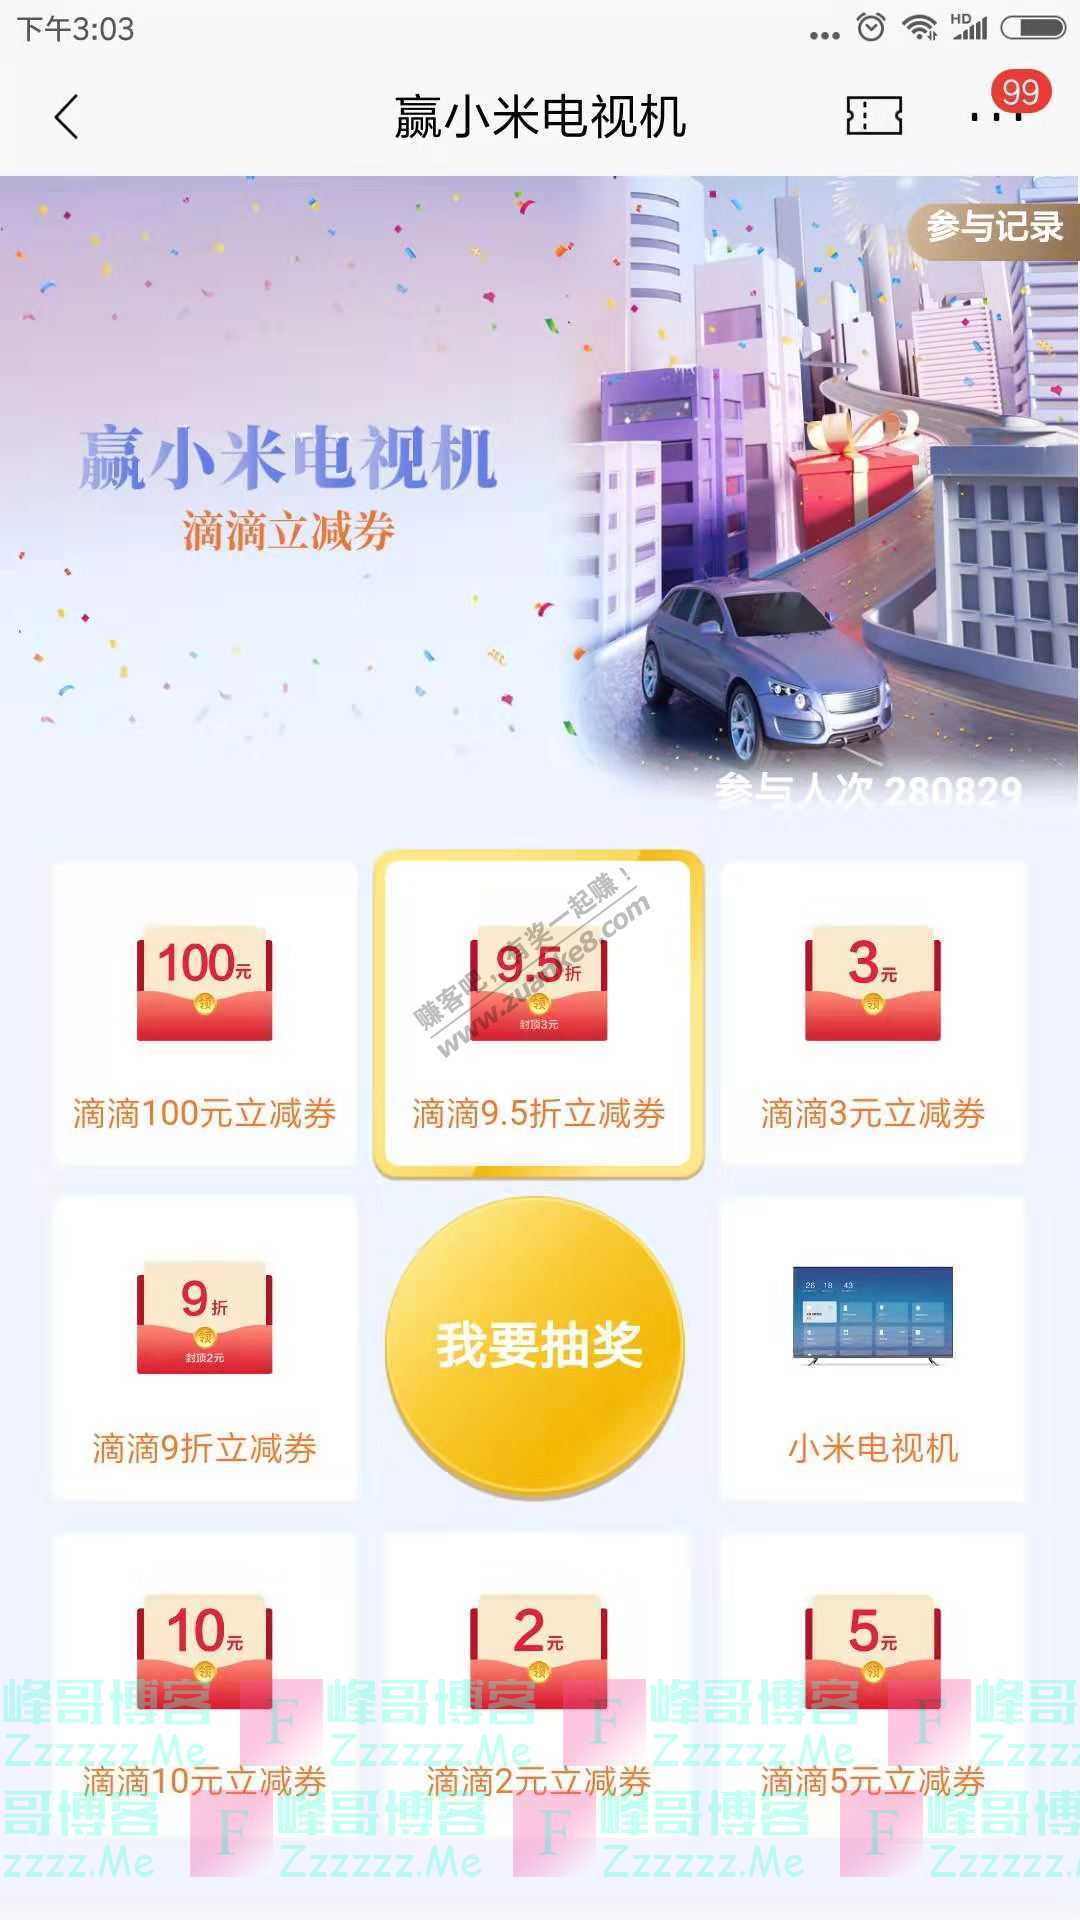 招商银行app赢小米电视机（截止2月28日）